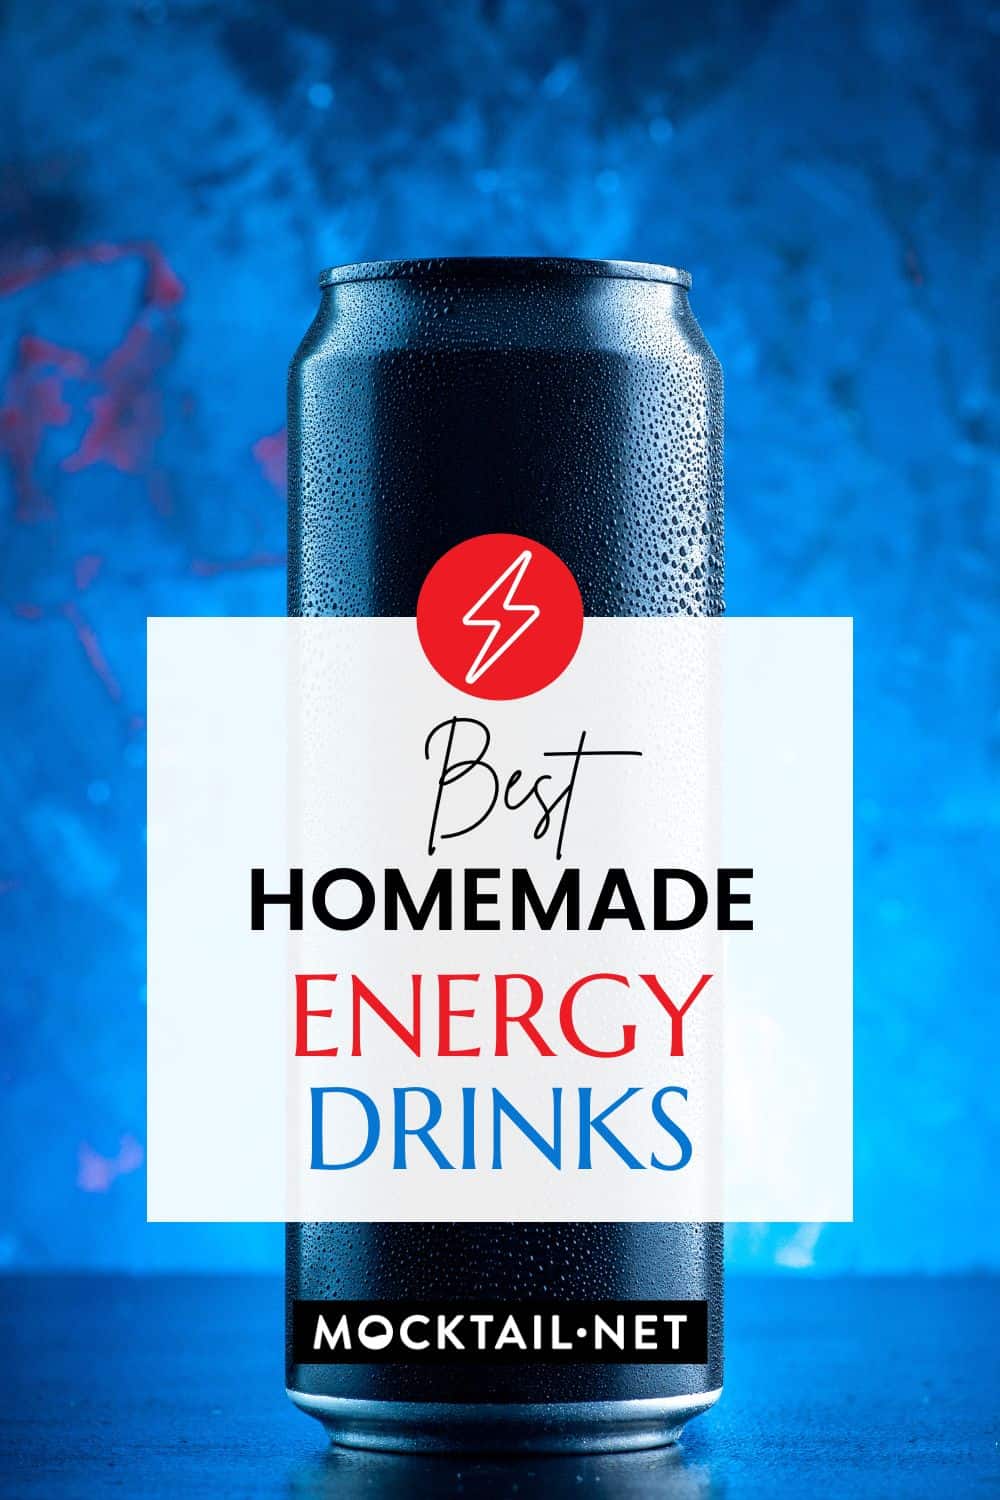 Best Homemade Energy Drinks